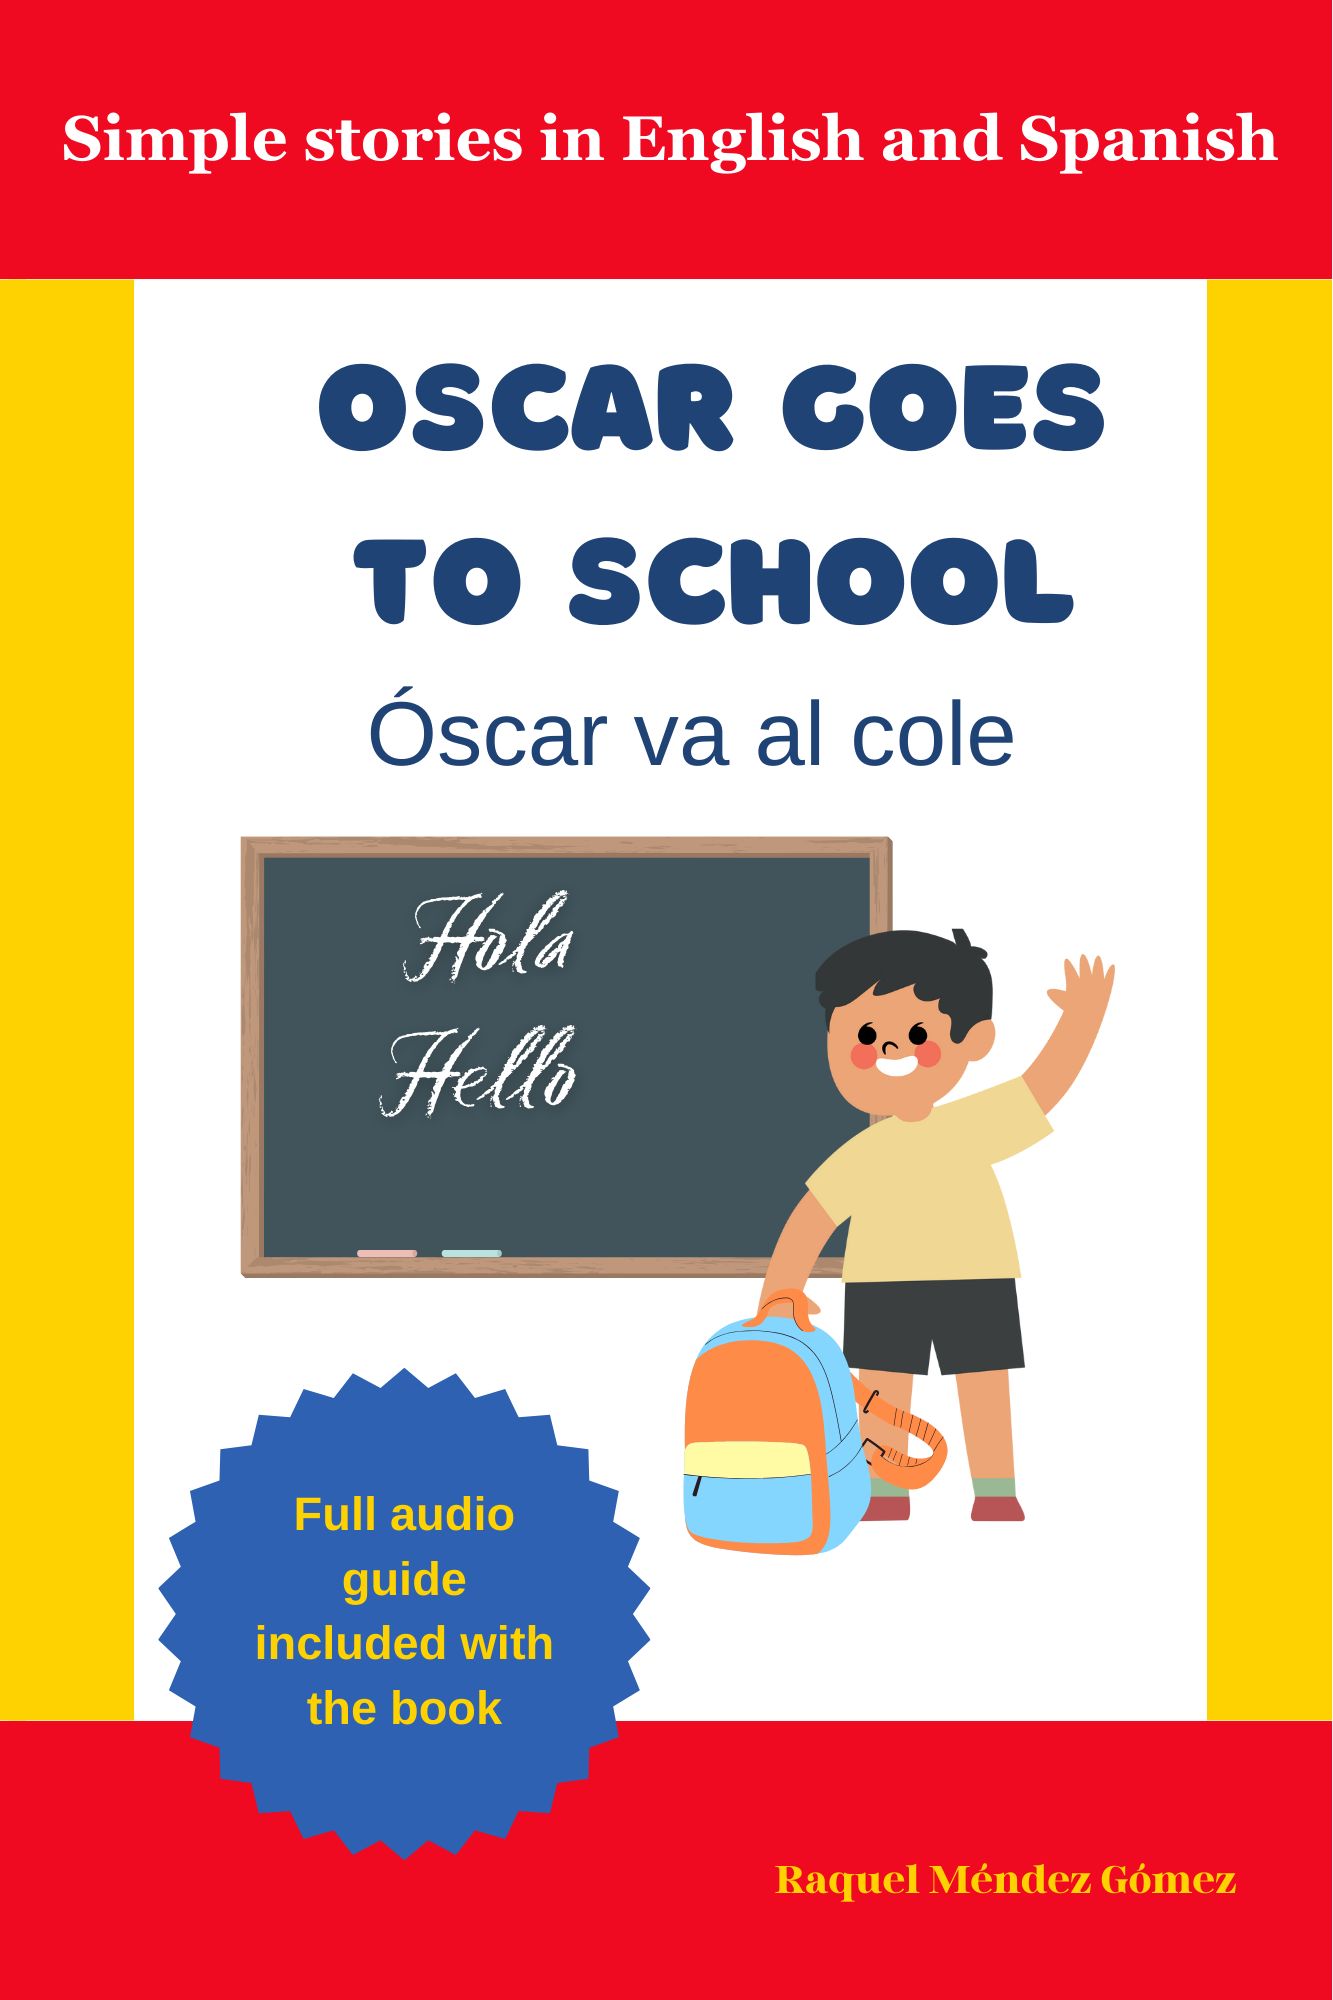 Oscar goes to school